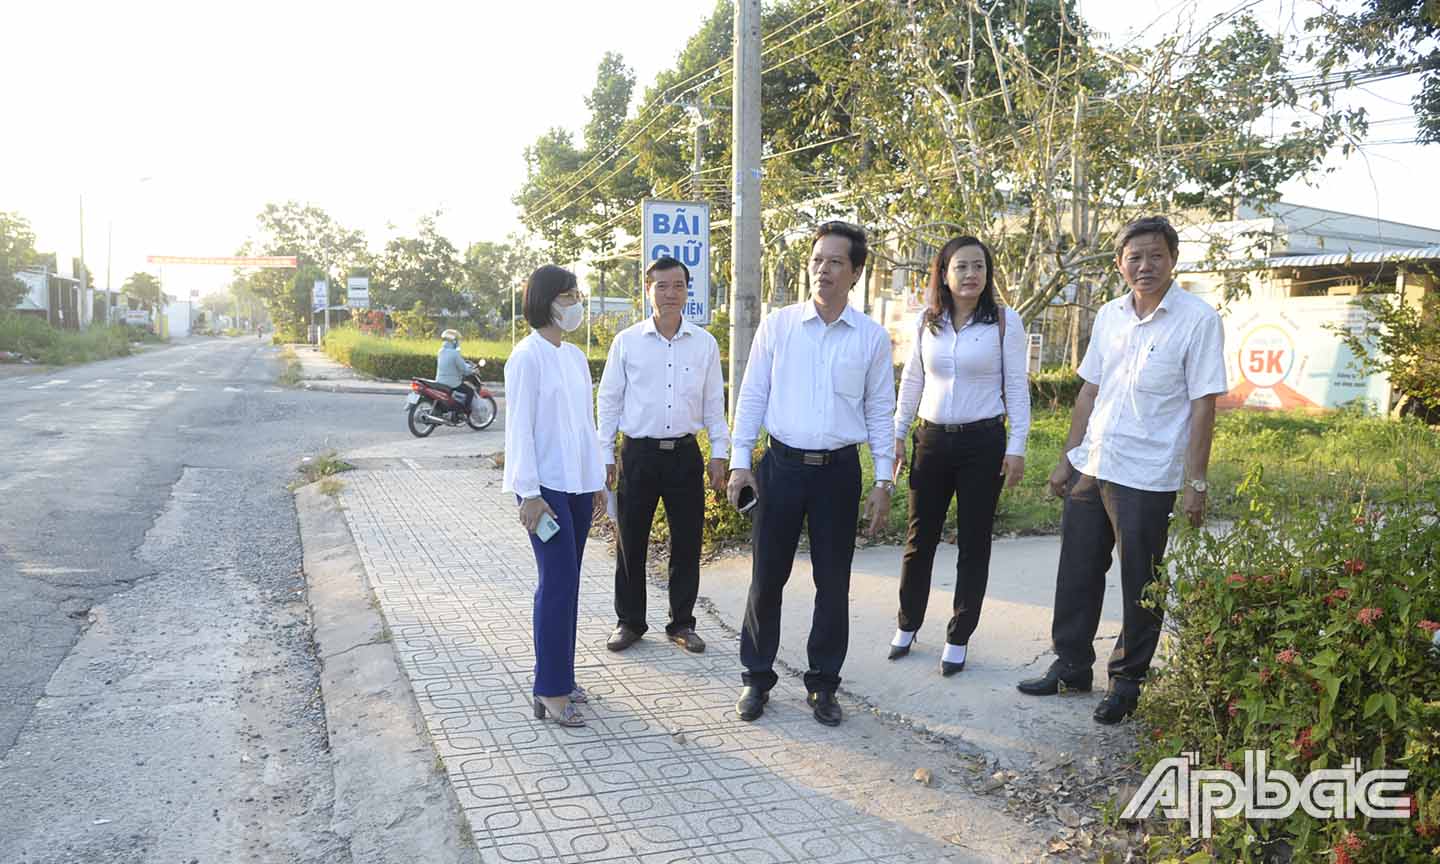 Đồng chí Nguyễn Thành Diệu kiểm tra địa điểm xuất phát cự ly 7 km.